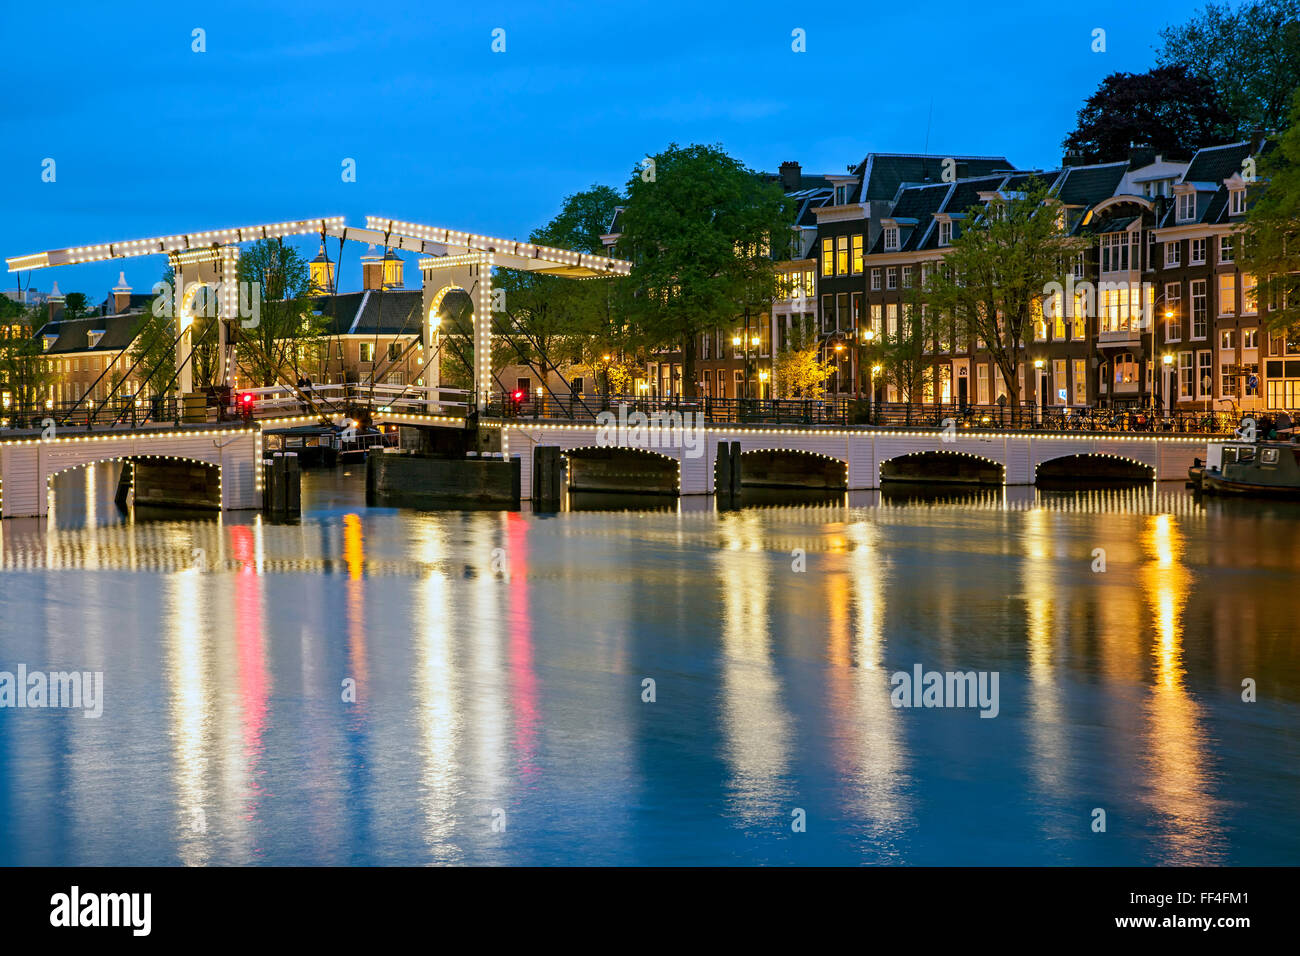 Magere Brug (pont Maigre) et de la rivière Amstel, Amsterdam, Hollande, Pays-Bas Banque D'Images